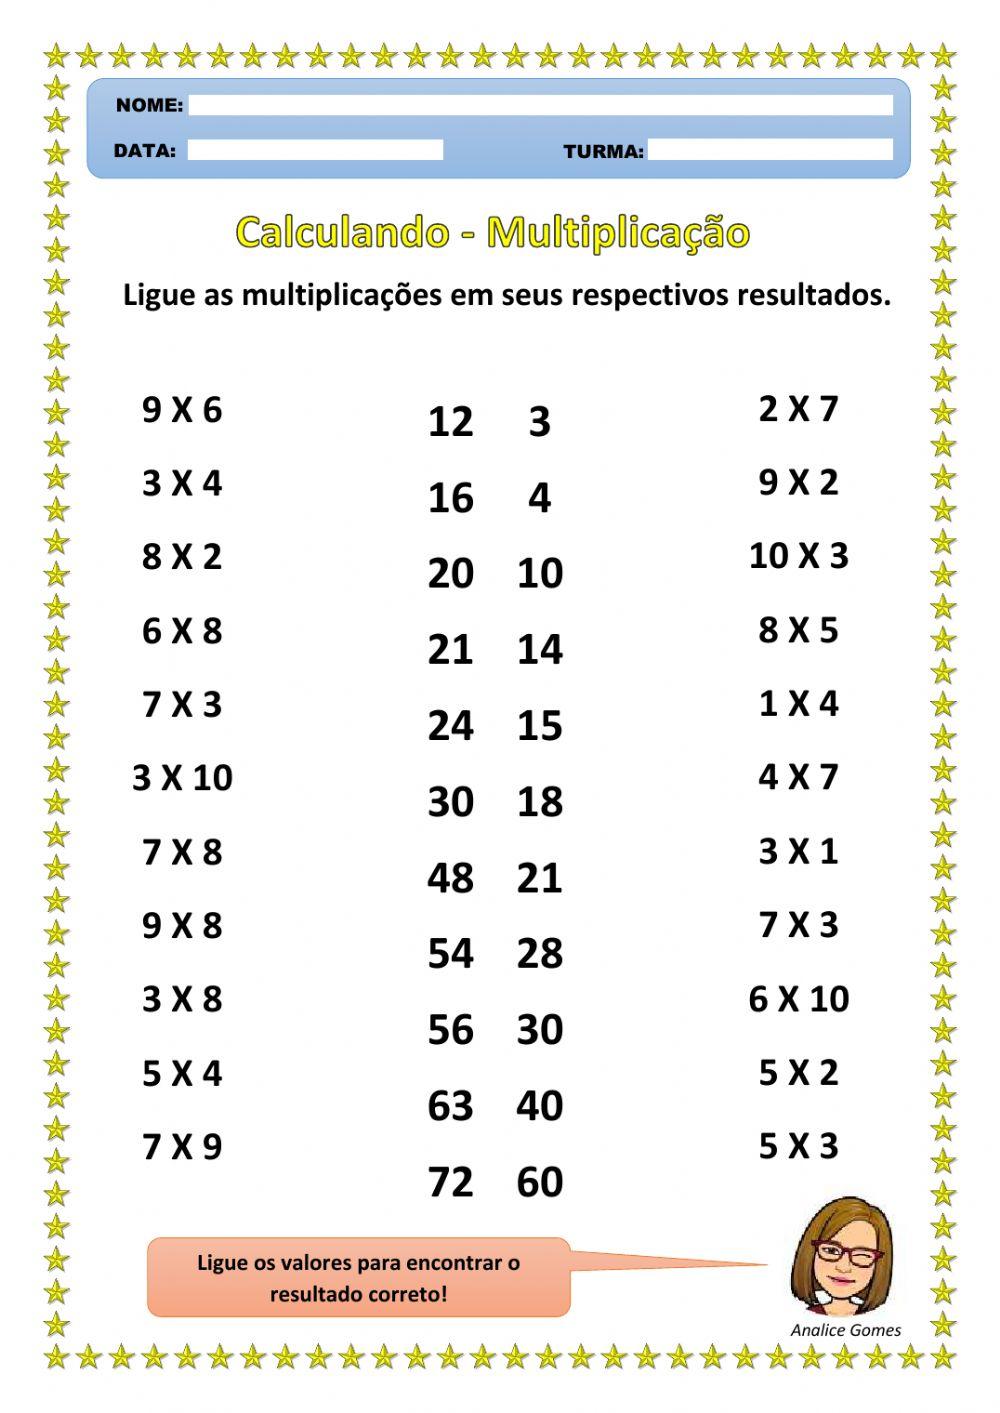 Calculando - Multiplicação